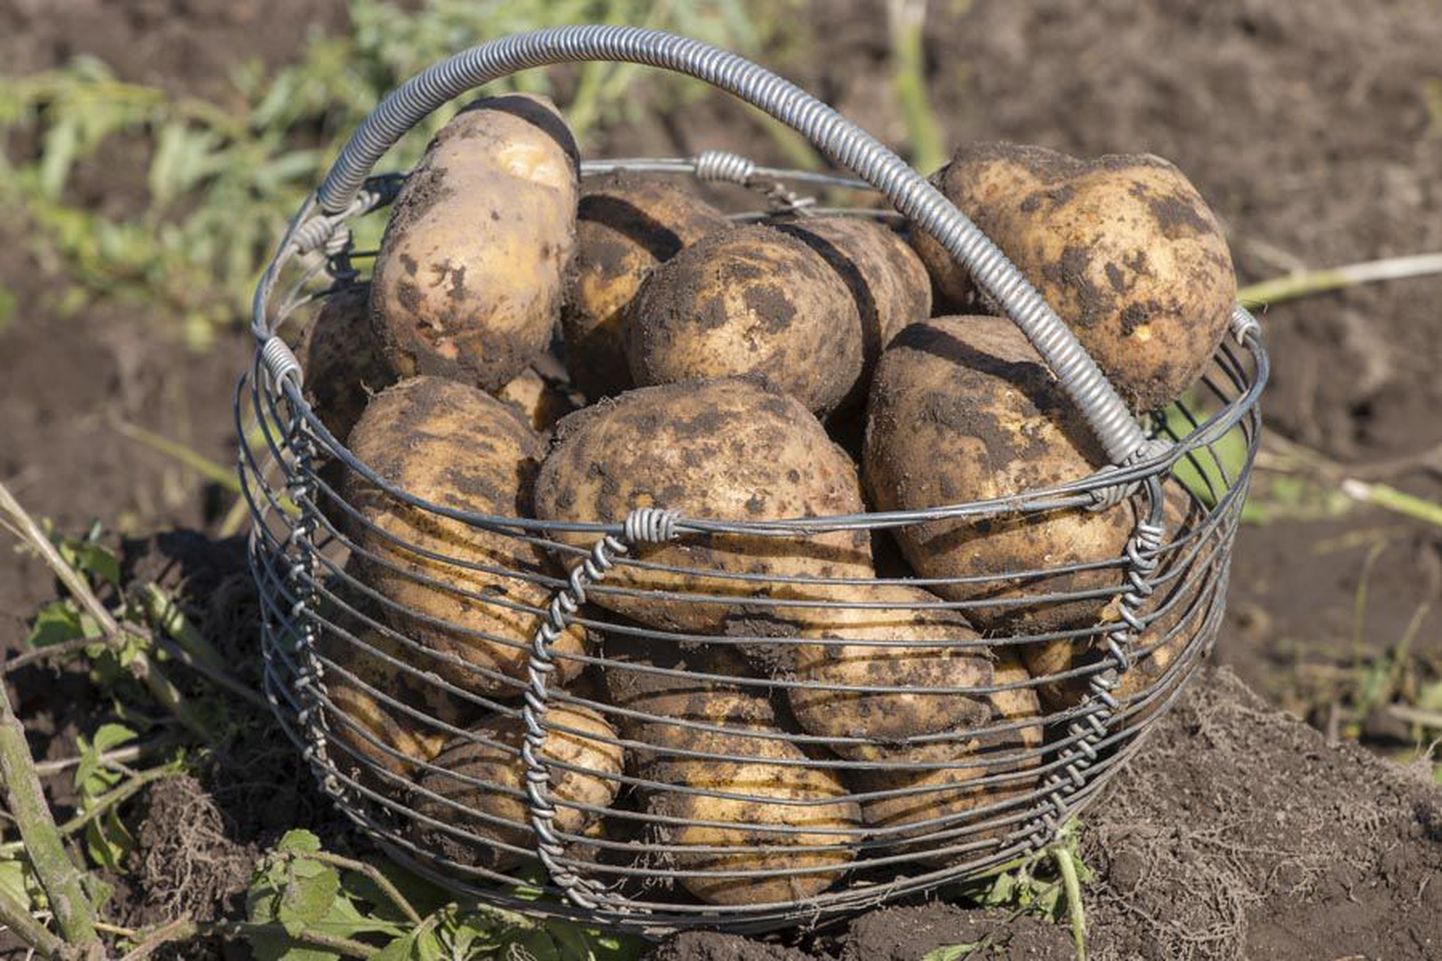 Traditsiooniliselt teiseks leivaks kutsutavat kartulit on Eestis kasvatatud ja söödud mitme sajandi jooksul, aga viimastel aastakümnetel on selle roll eestlaste toidulaual tublisti vähenenud, sest üha enam süüakse makarontooteid ja riisi.